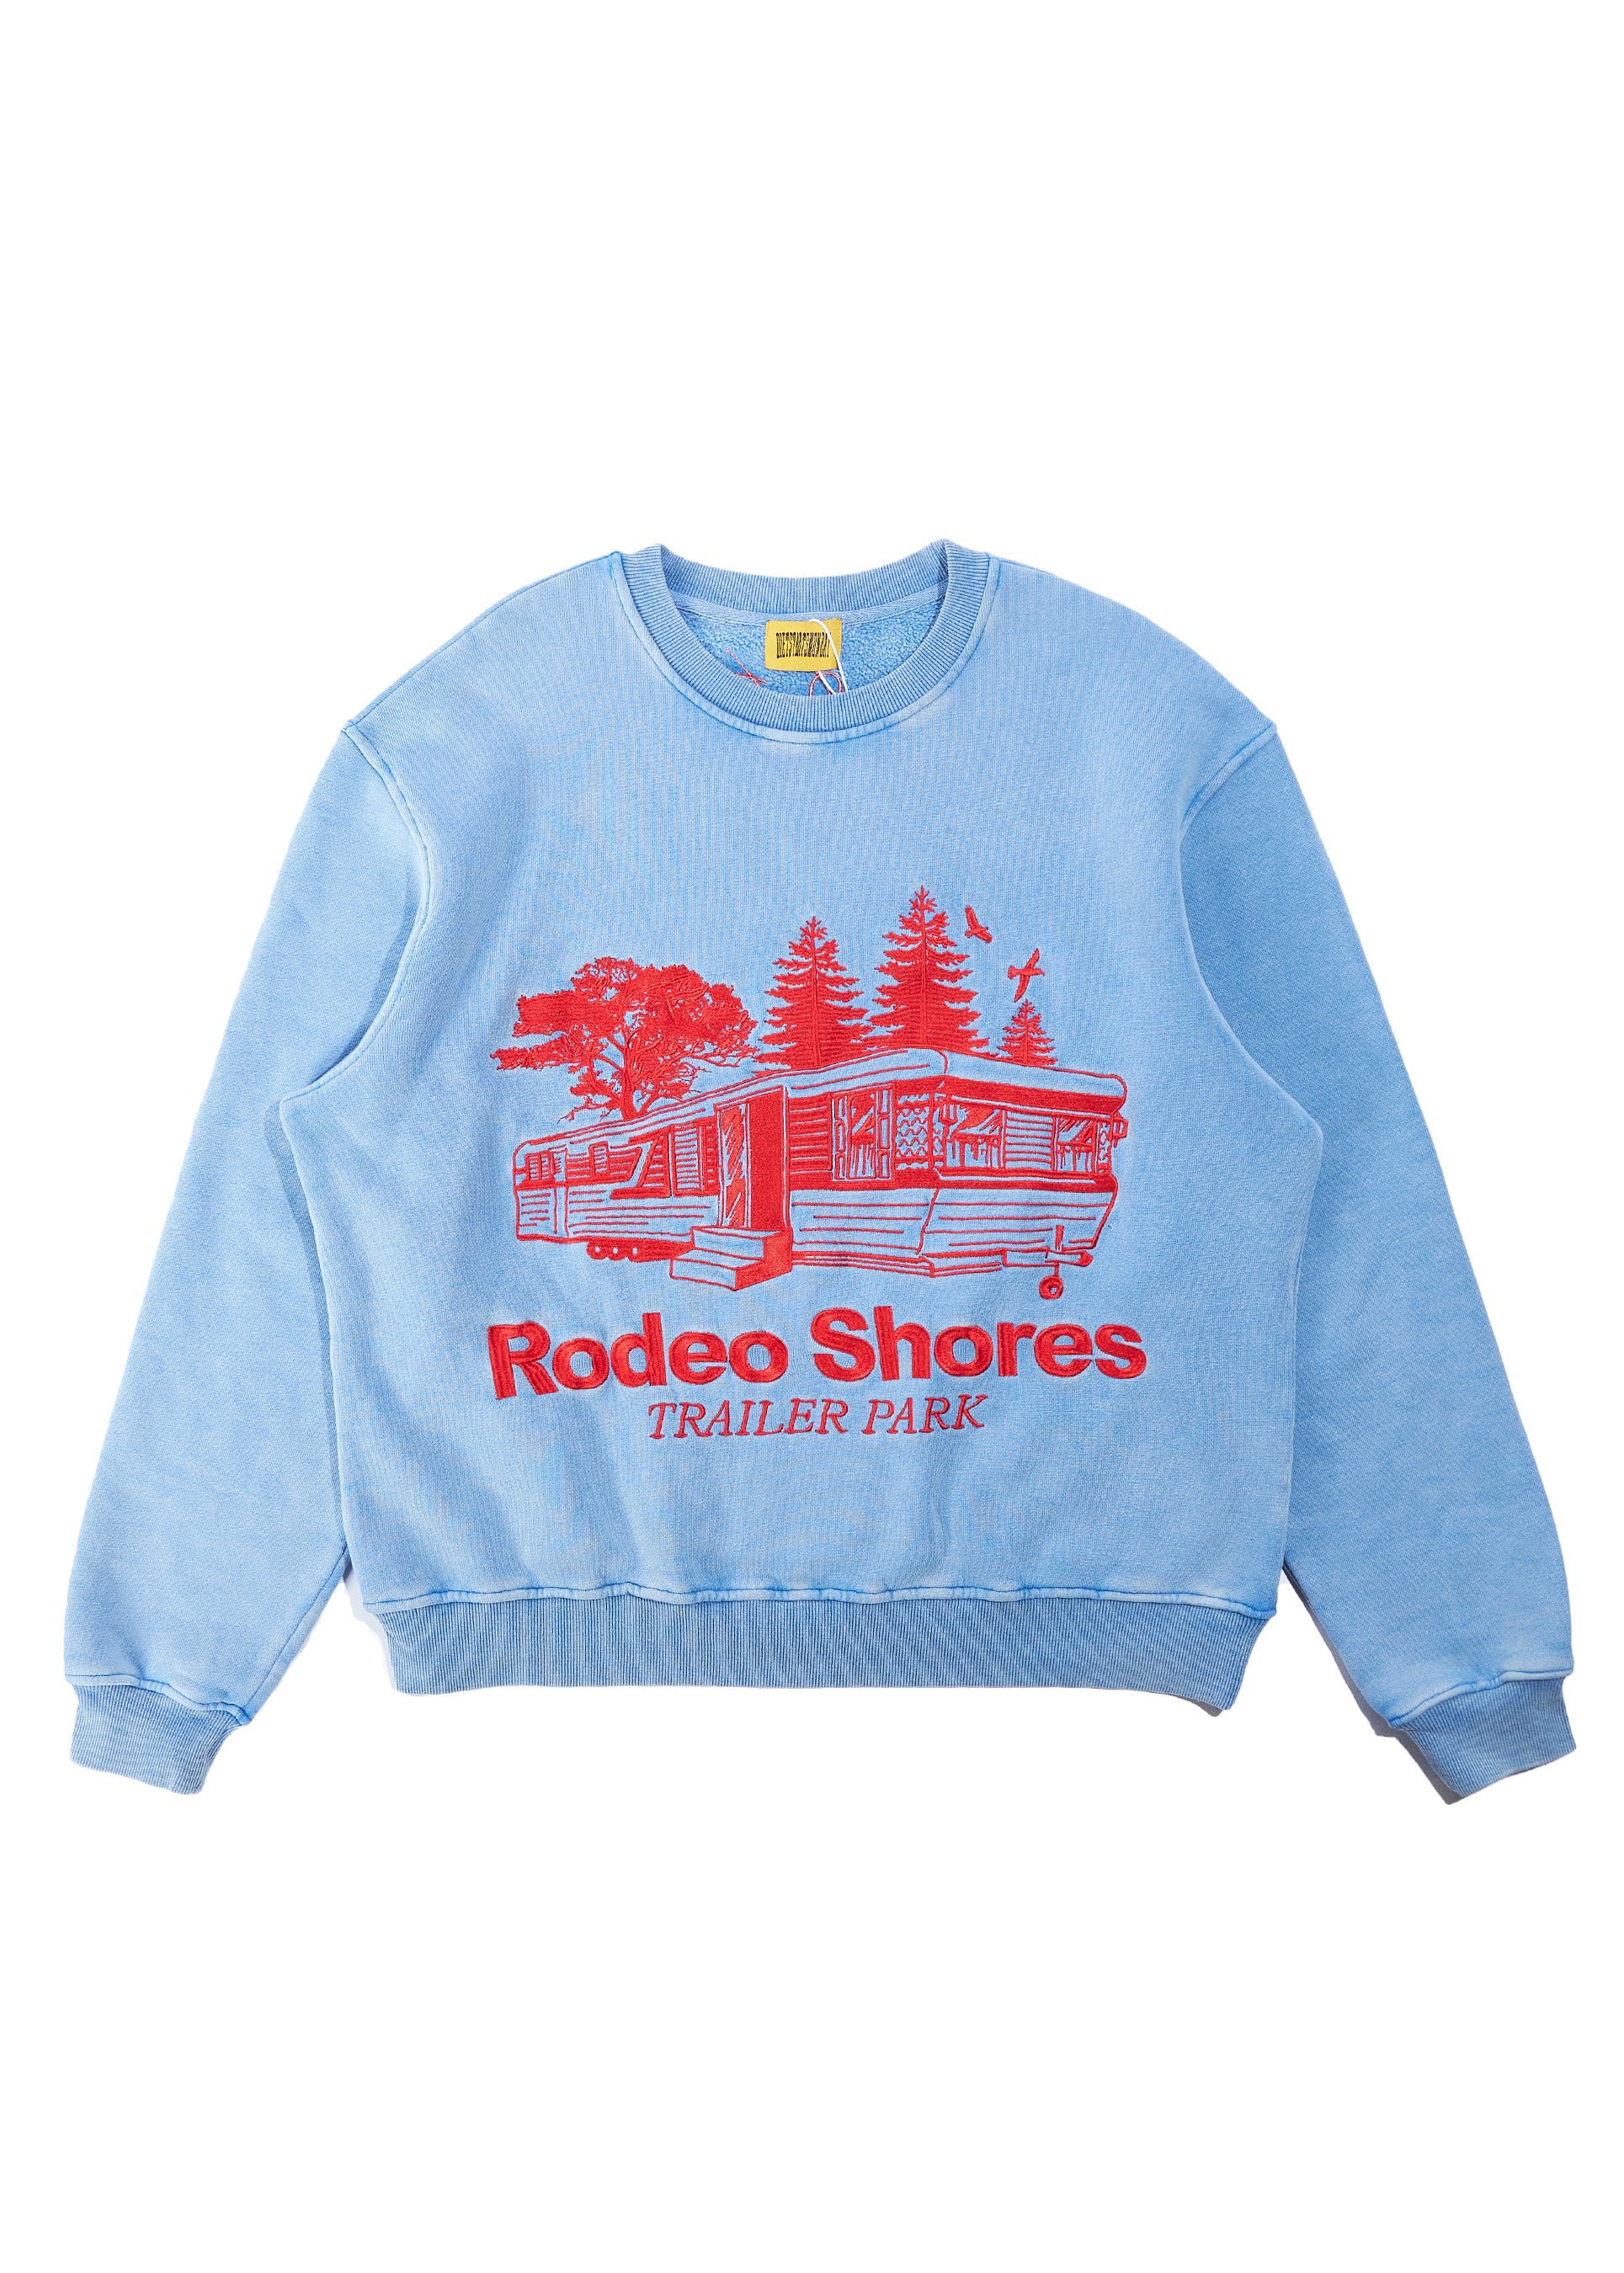 Rodeo Shores Crewneck - Blue